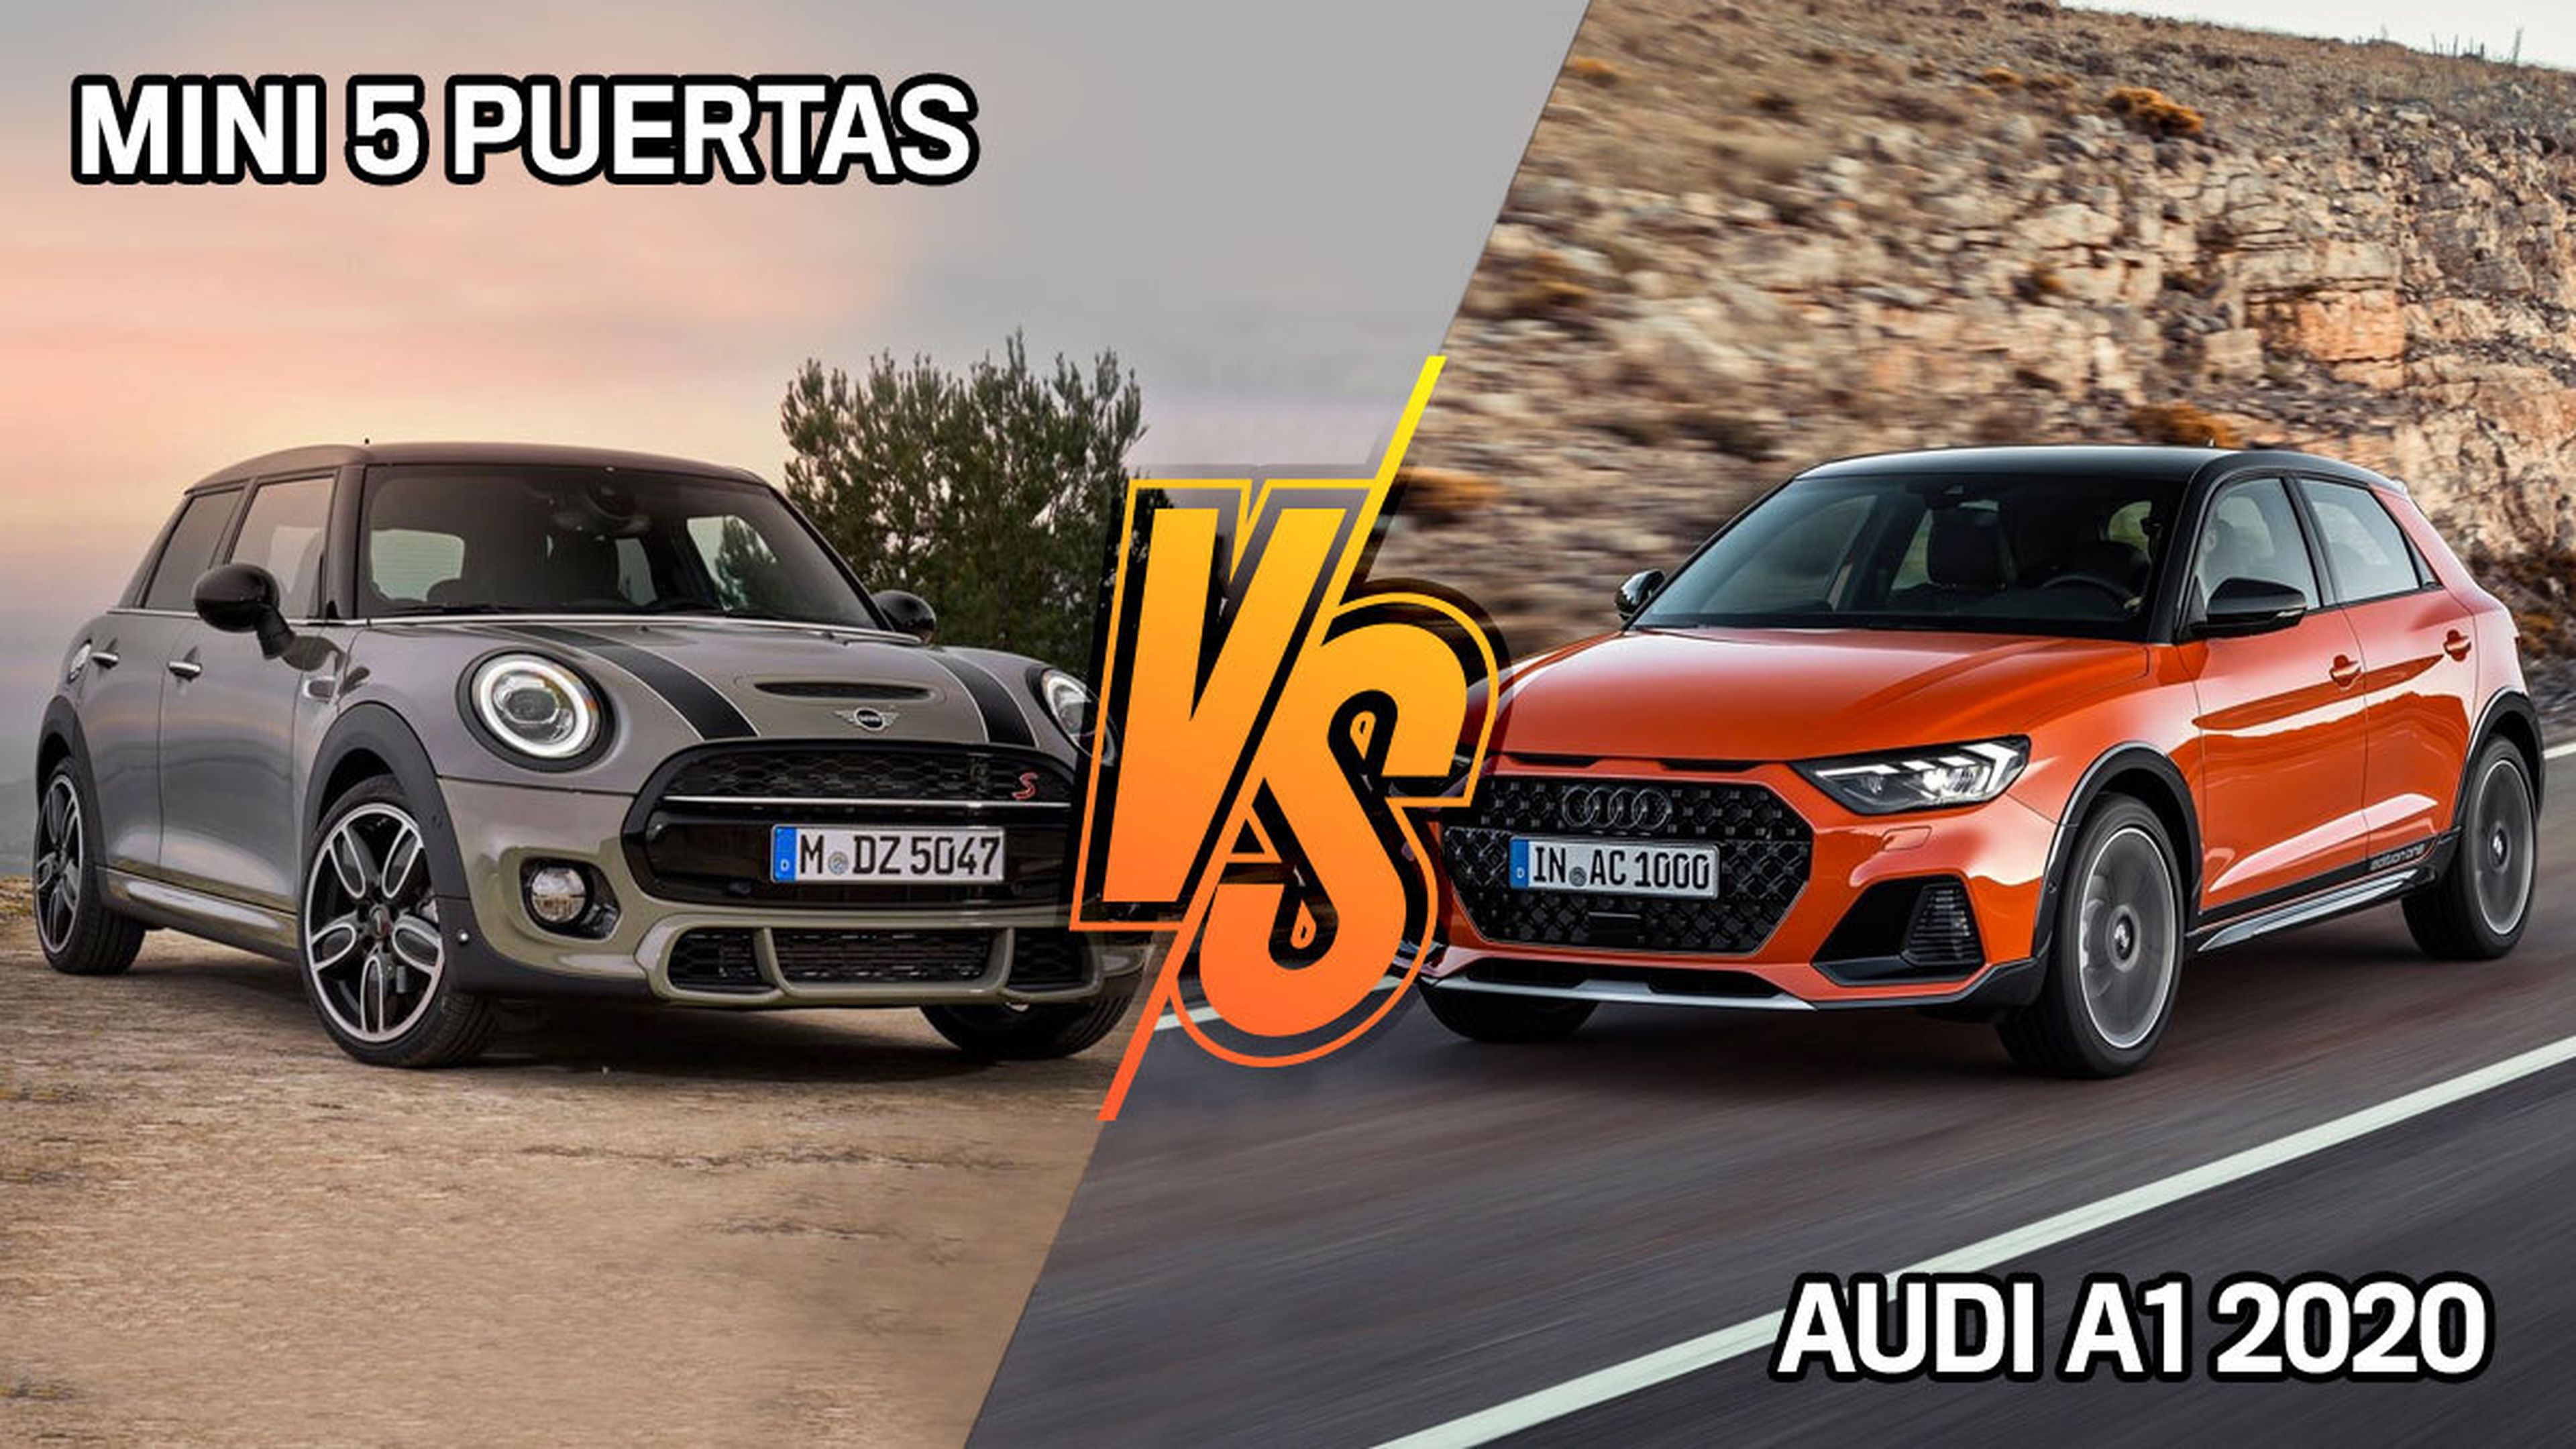 Audi A1 2020 o Mini, ¿cuál es mejor comprar?